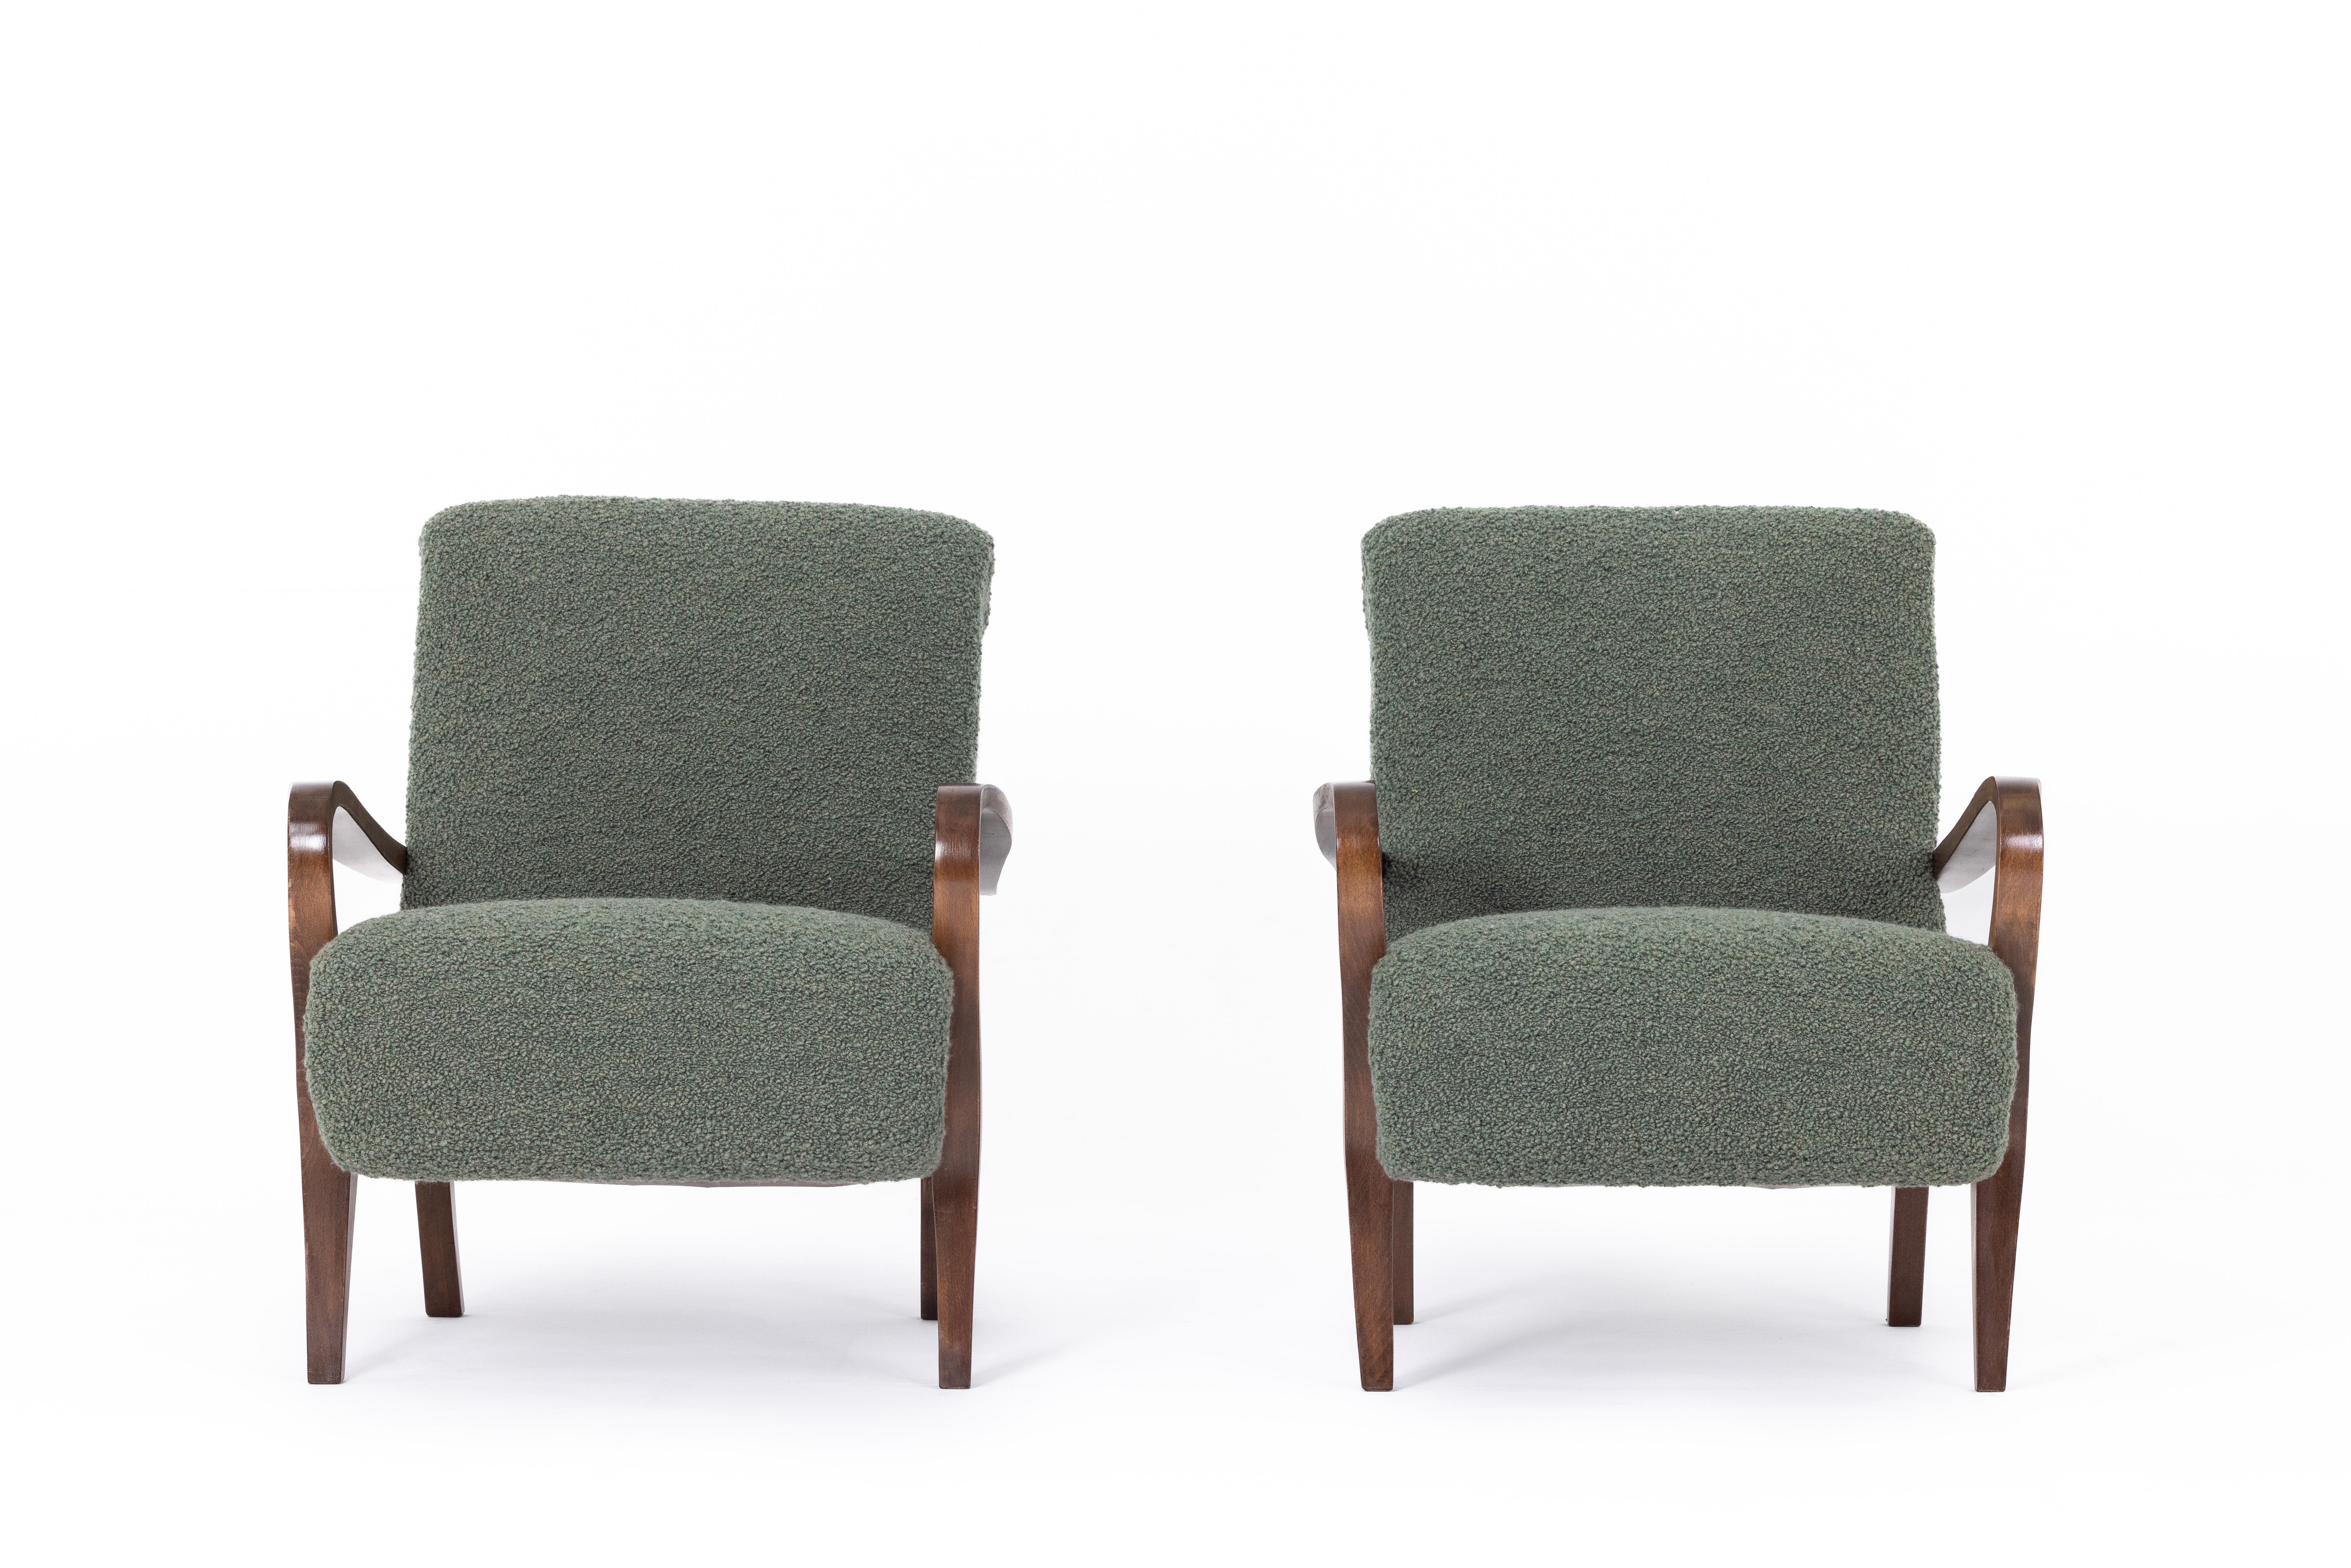 Pair of art deco armchairs, France 1920s, Dedar fabric For Sale 1